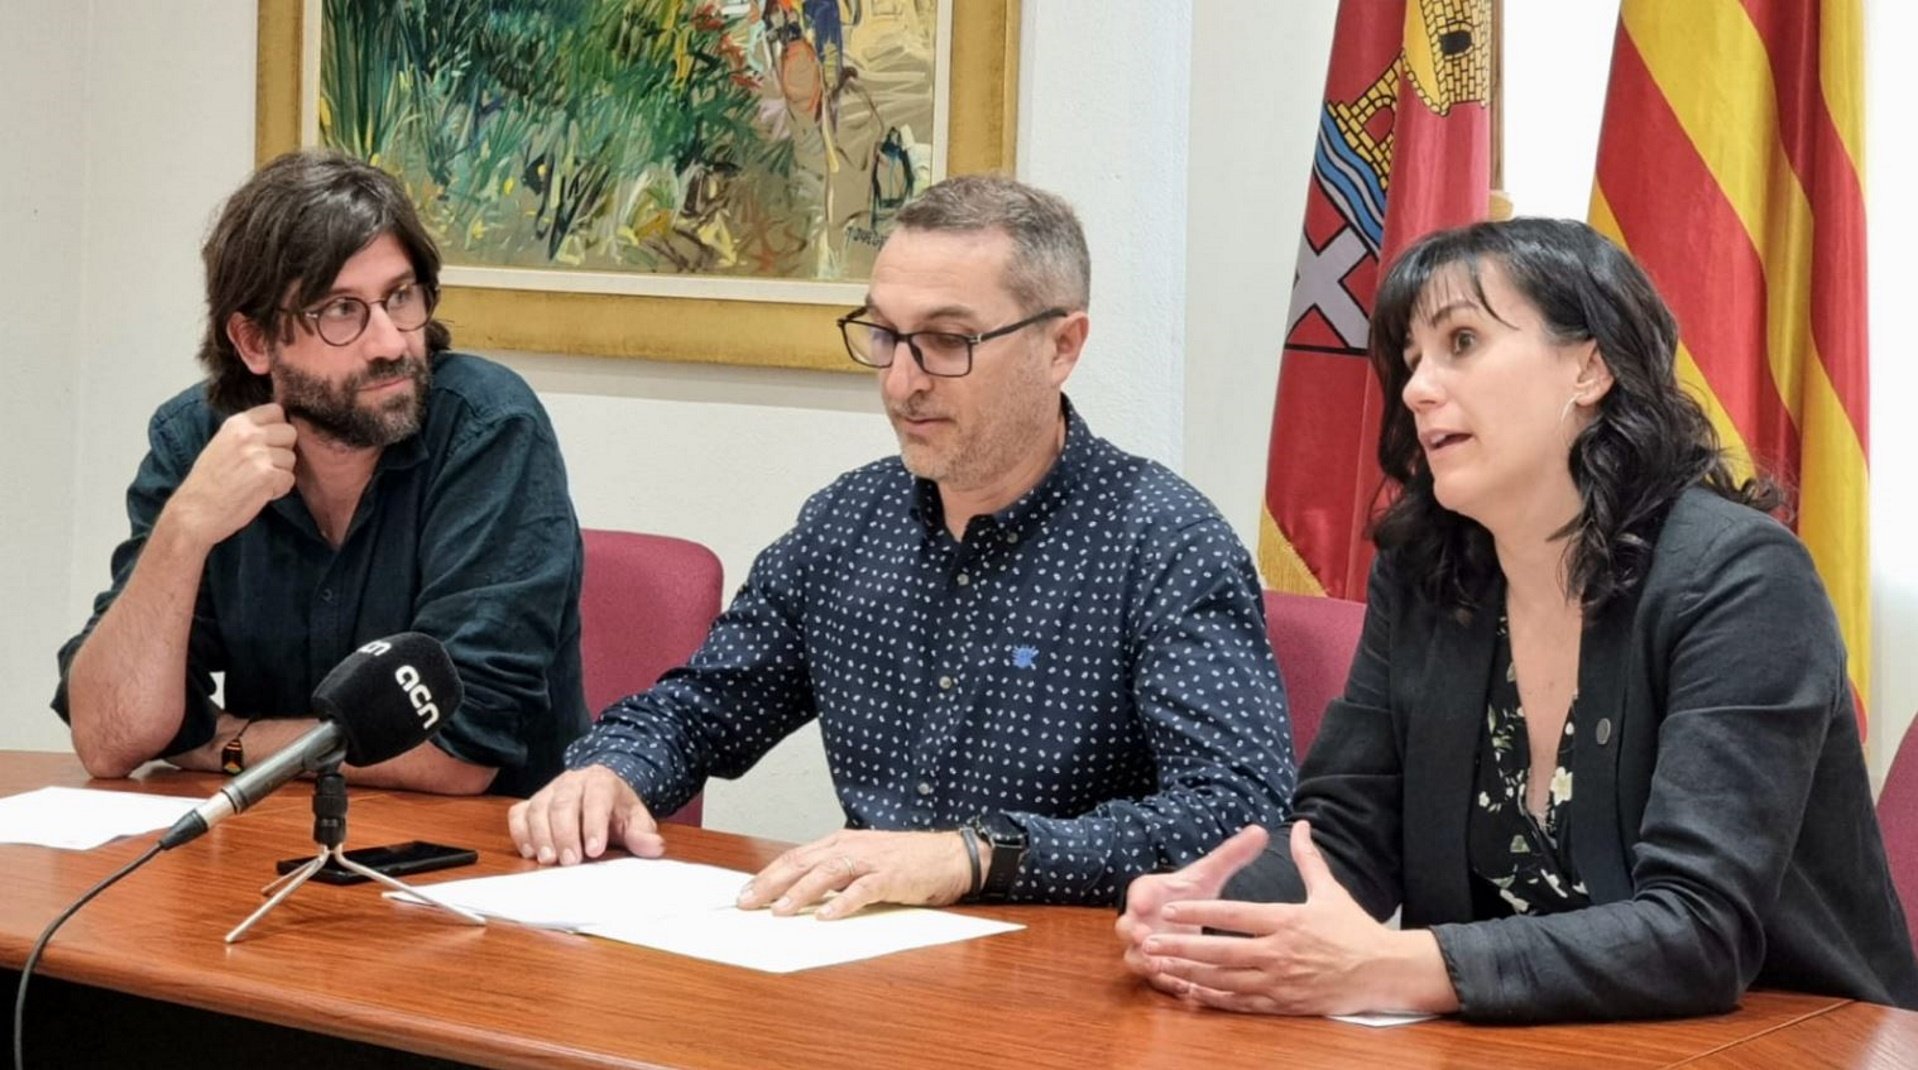 Primera prueba piloto para usar la identidad digital republicana en Ayuntamientos catalanes